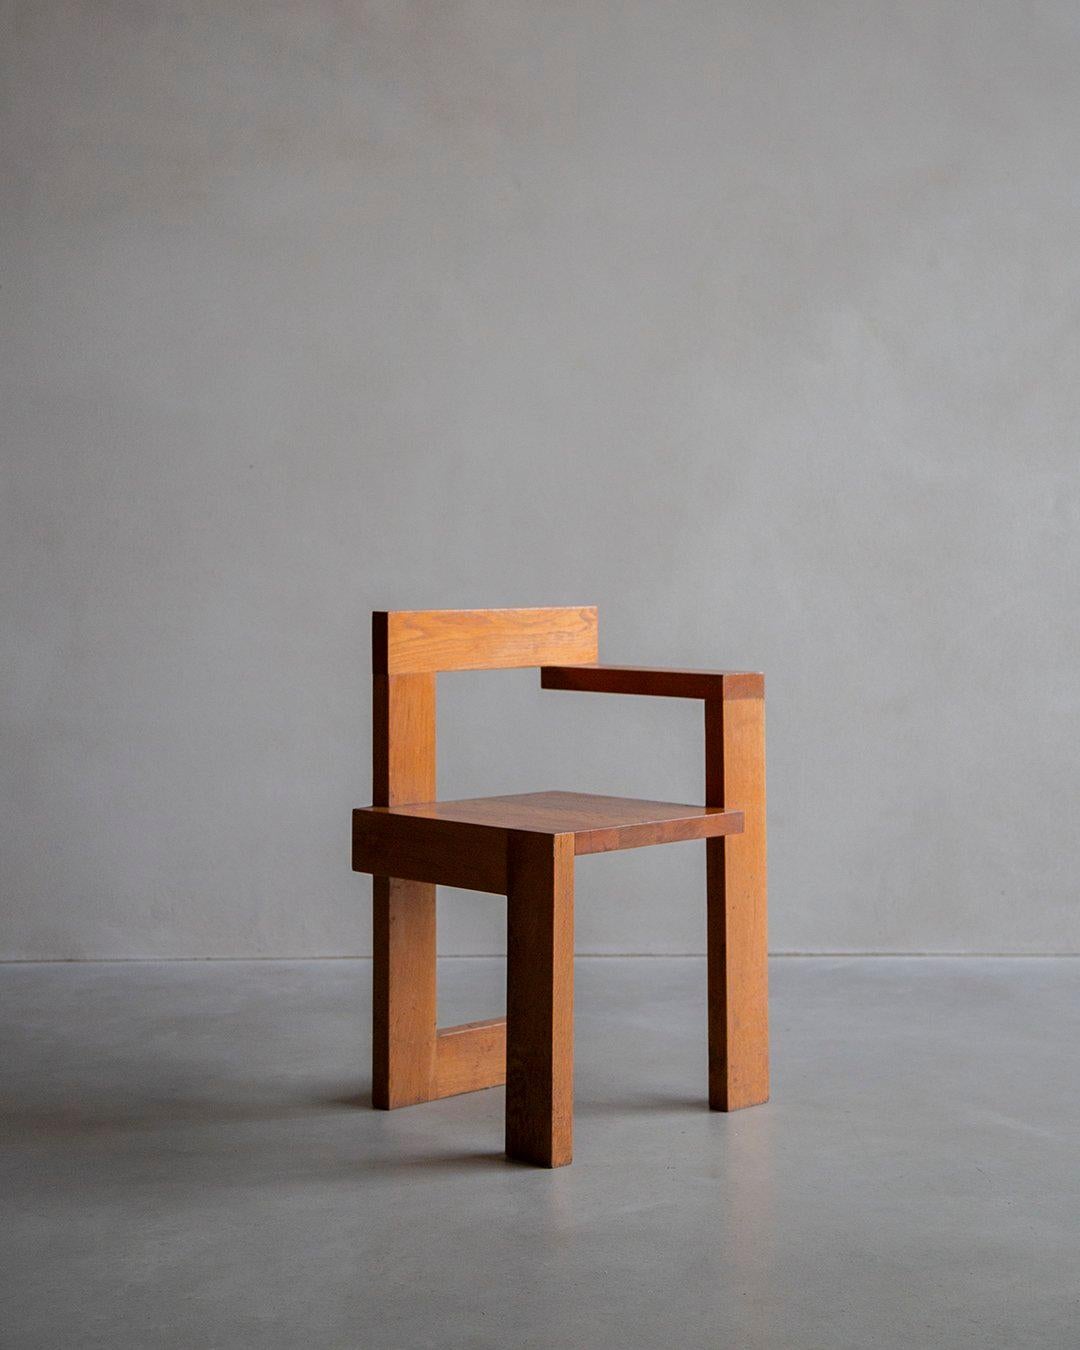 Diese niederländische Interpretation des Steltman-Stuhls aus den 1970er Jahren ist eine Hommage an Rietvelds Vision. Er ist aus massiver Eiche gefertigt und weist eine sehr schöne natürliche Holzmaserung auf, die sowohl Schönheit als auch Stärke